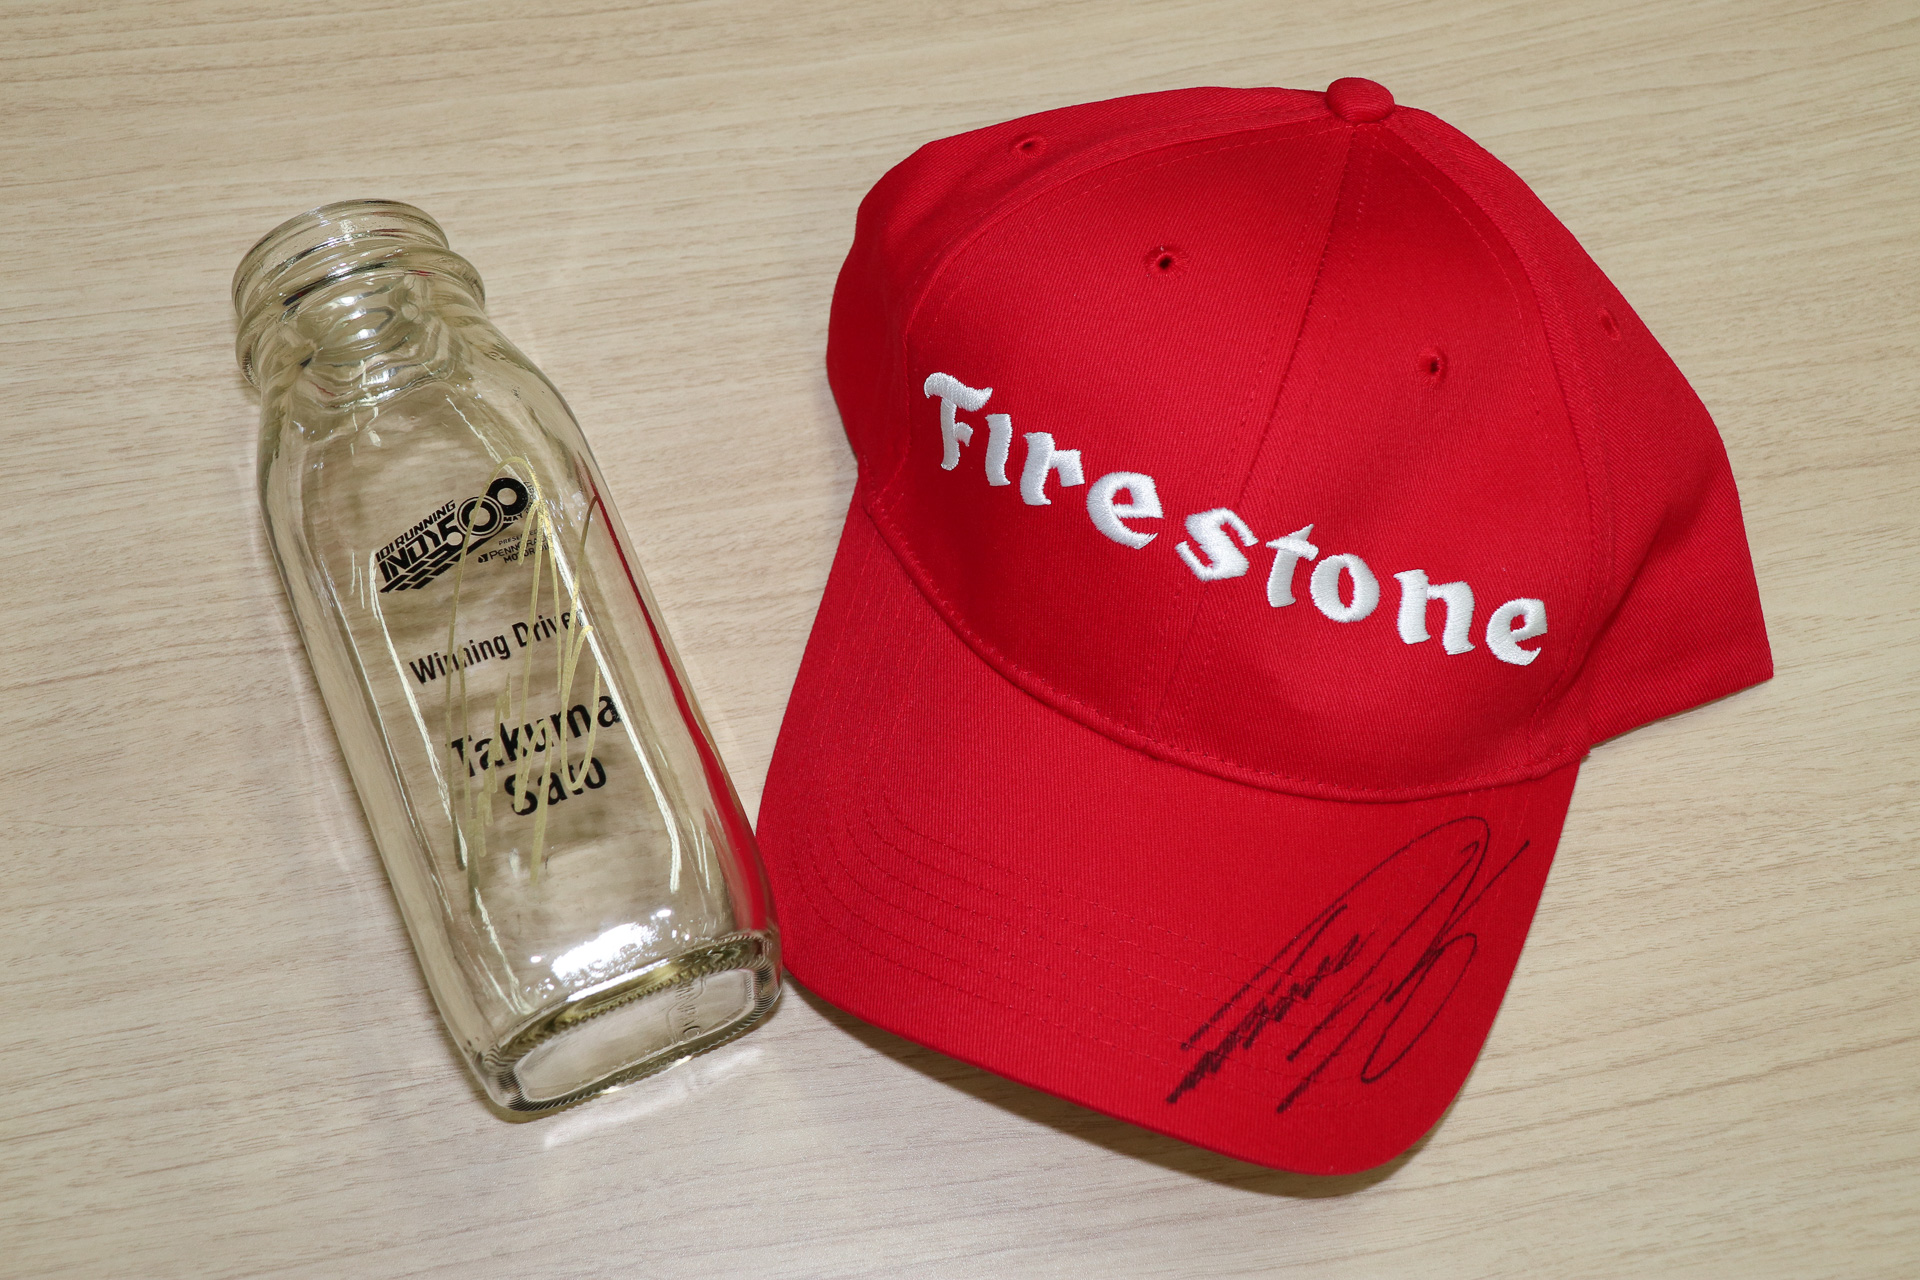 インディ500ウィナー佐藤琢磨選手の直筆サイン入りグッズをプレゼント インディ500で購入した Takuma Sato牛乳 瓶 と ブリヂストンからいただいた ファイアストンキャップ 3名様に 12月7日18時締め切り